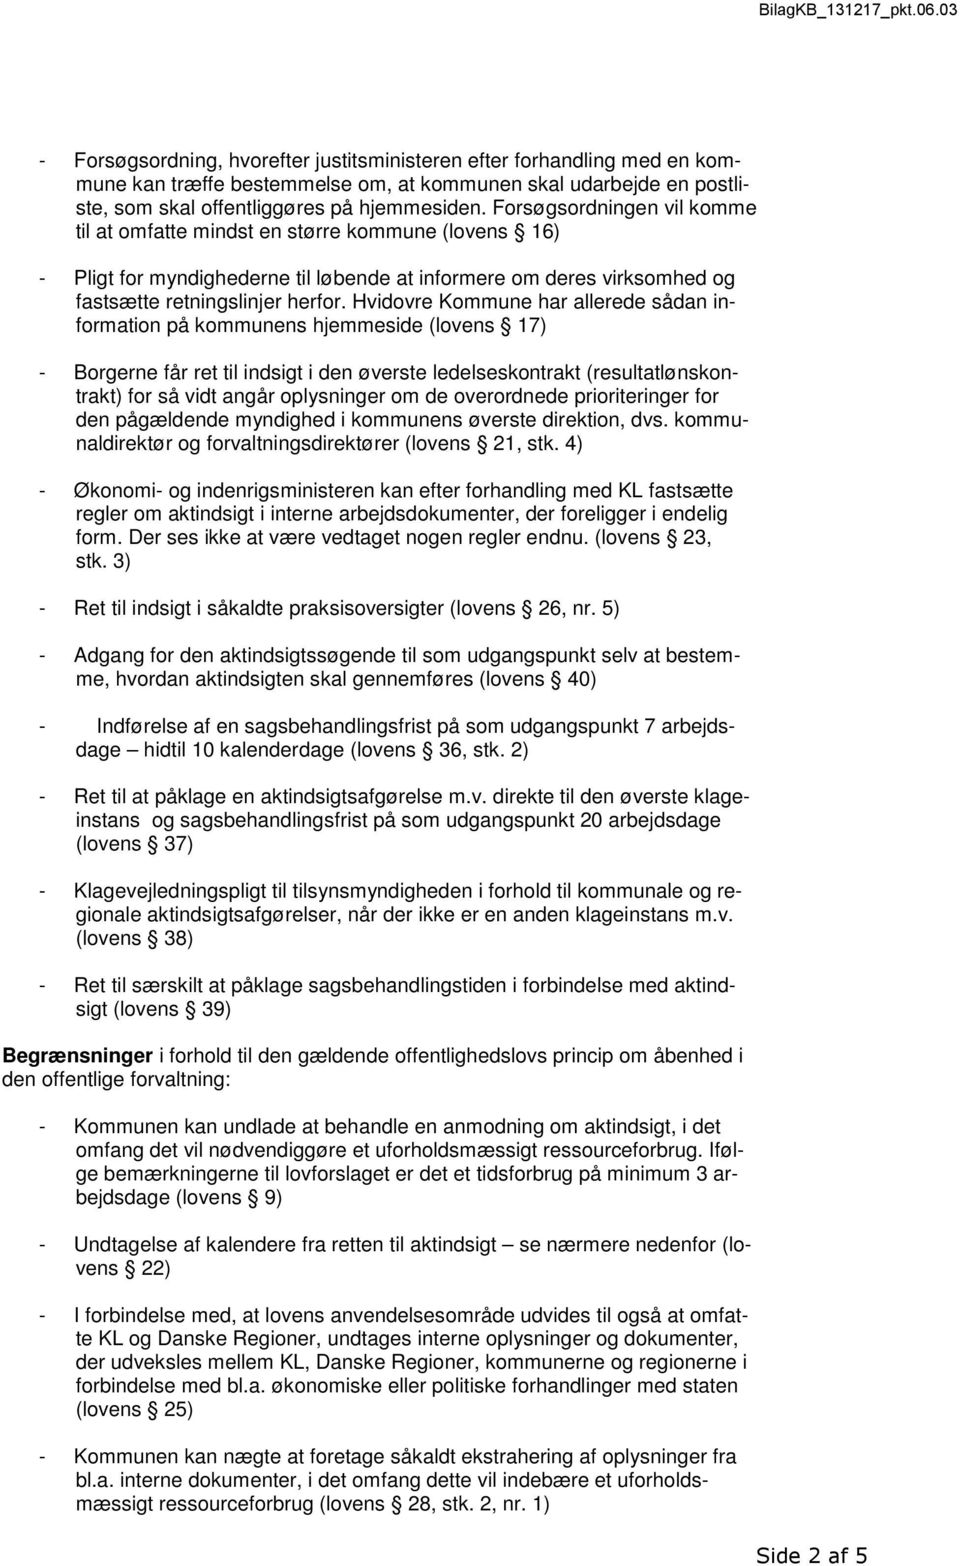 Hvidovre Kommune har allerede sådan information på kommunens hjemmeside (lovens 17) - Borgerne får ret til indsigt i den øverste ledelseskontrakt (resultatlønskontrakt) for så vidt angår oplysninger